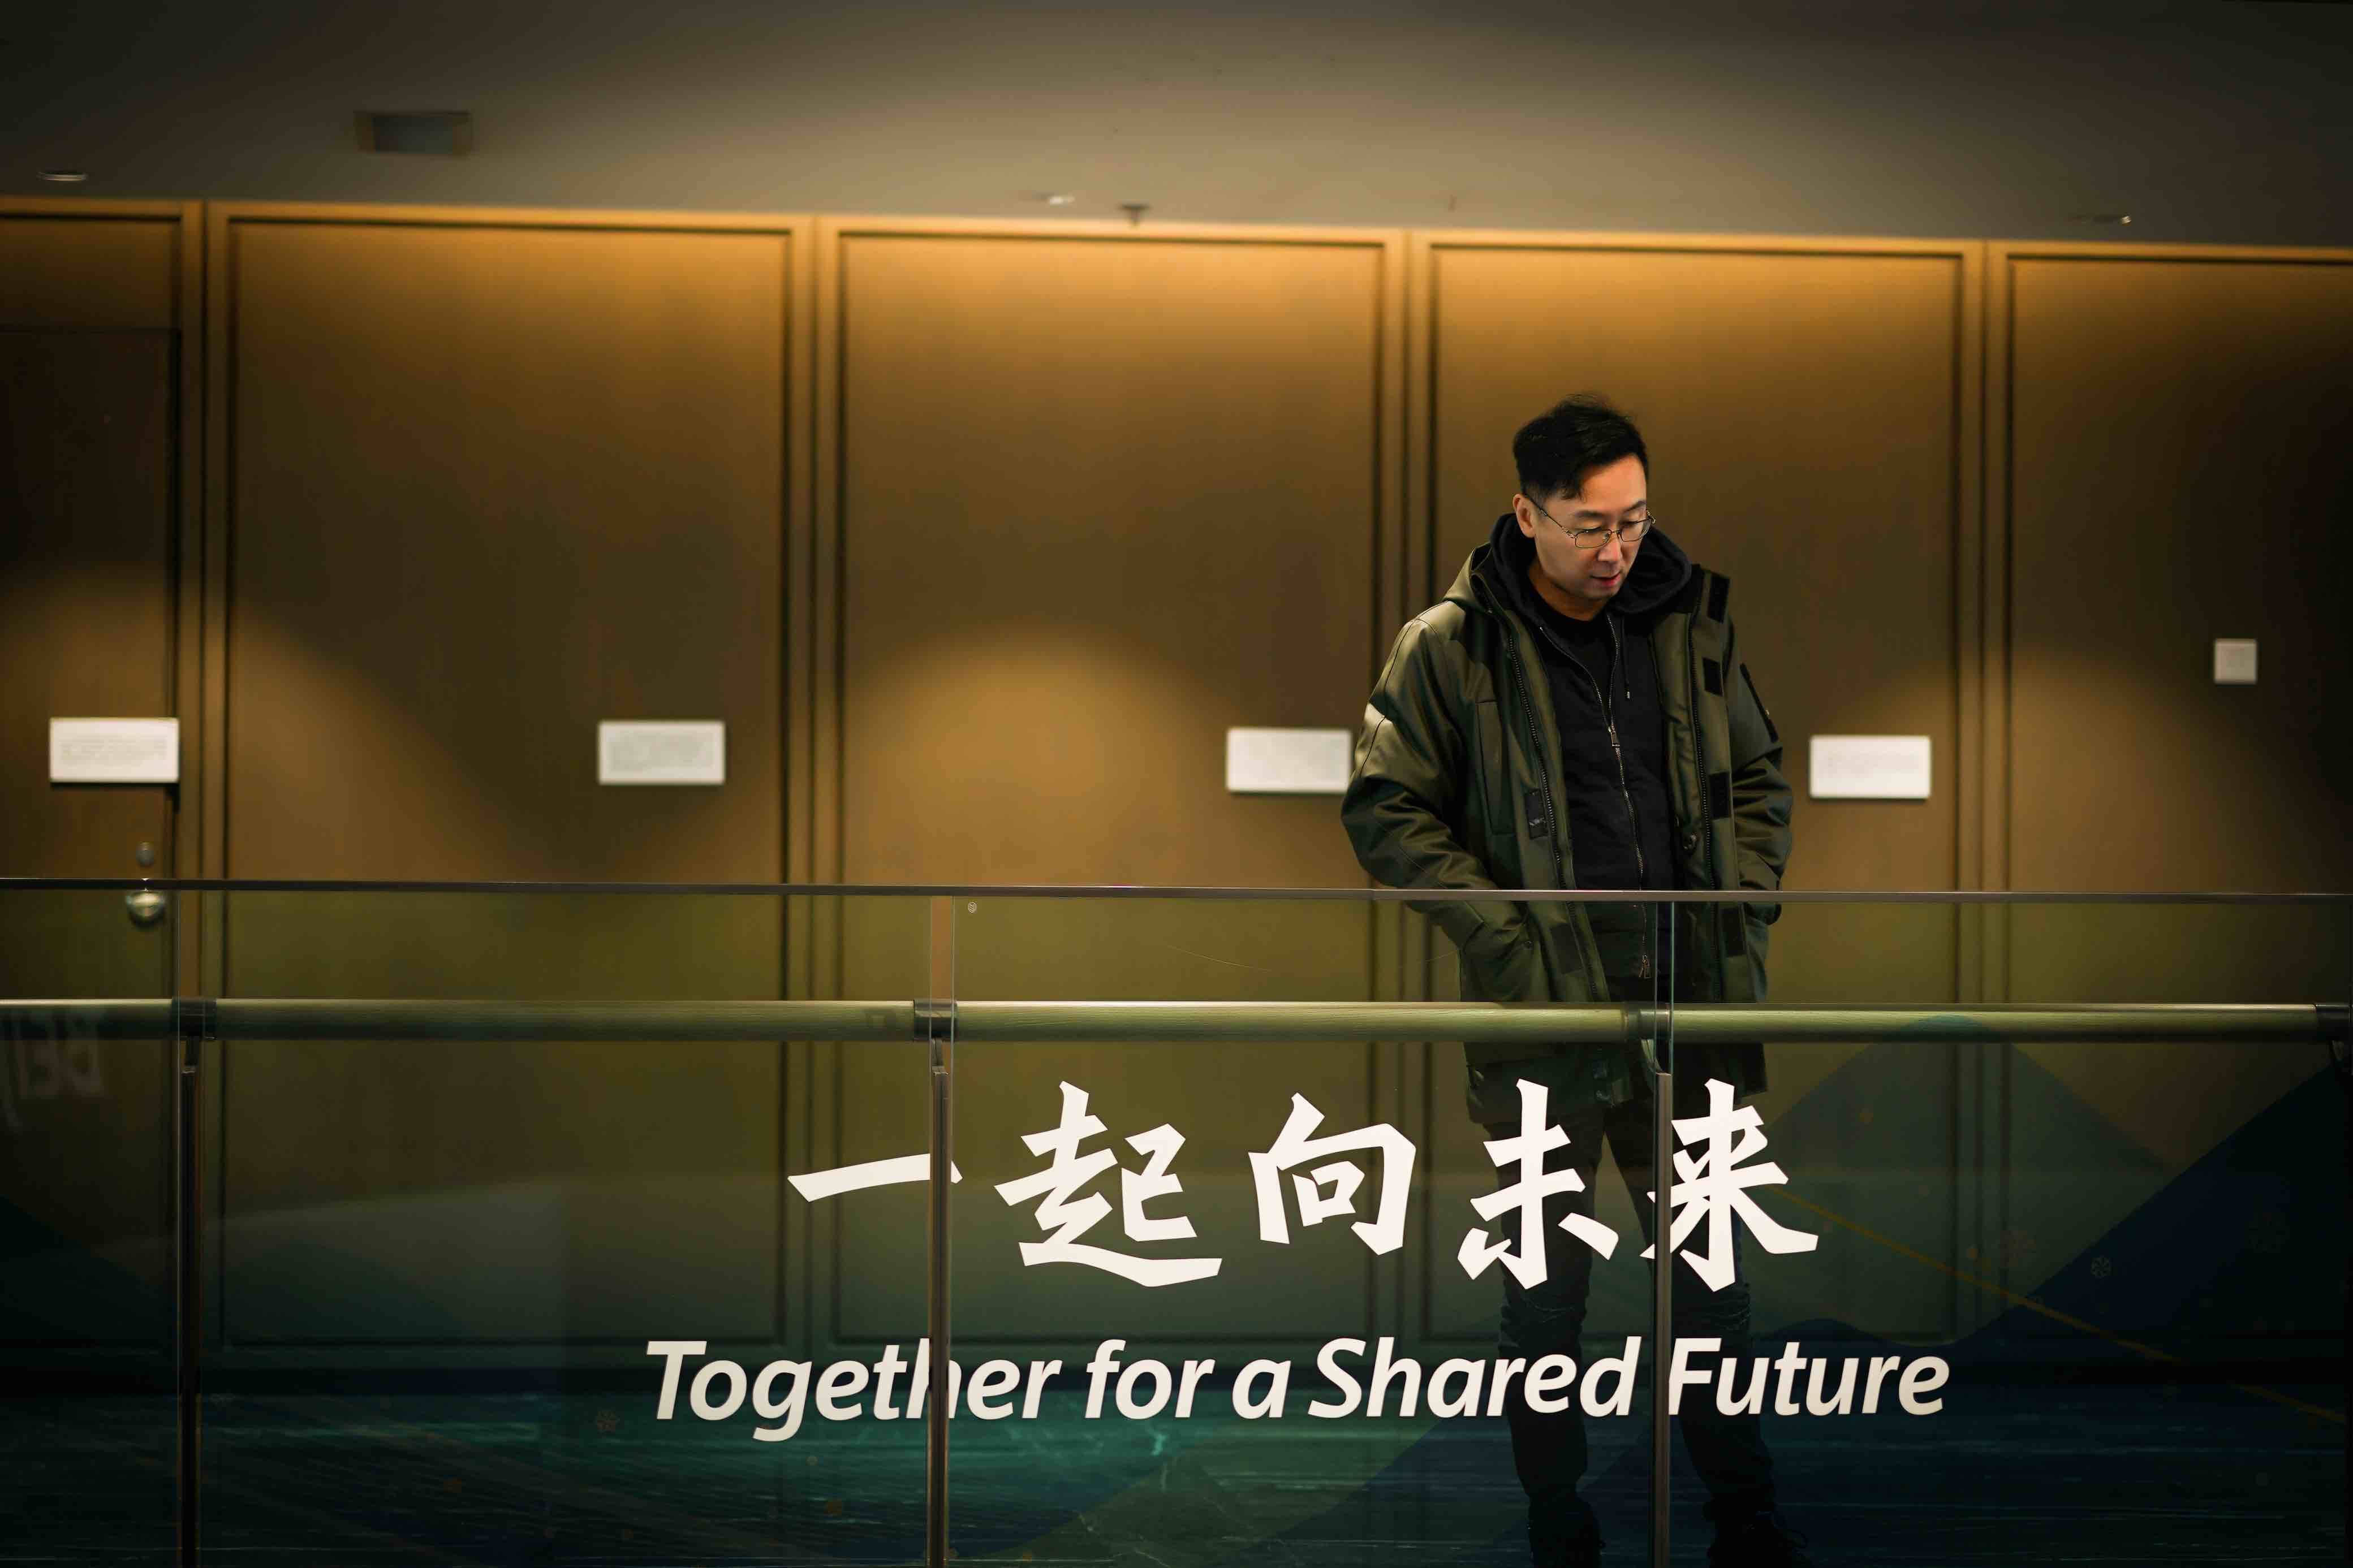 重温去年冬天的金色记忆 北京冬奥会官方电影即将上映